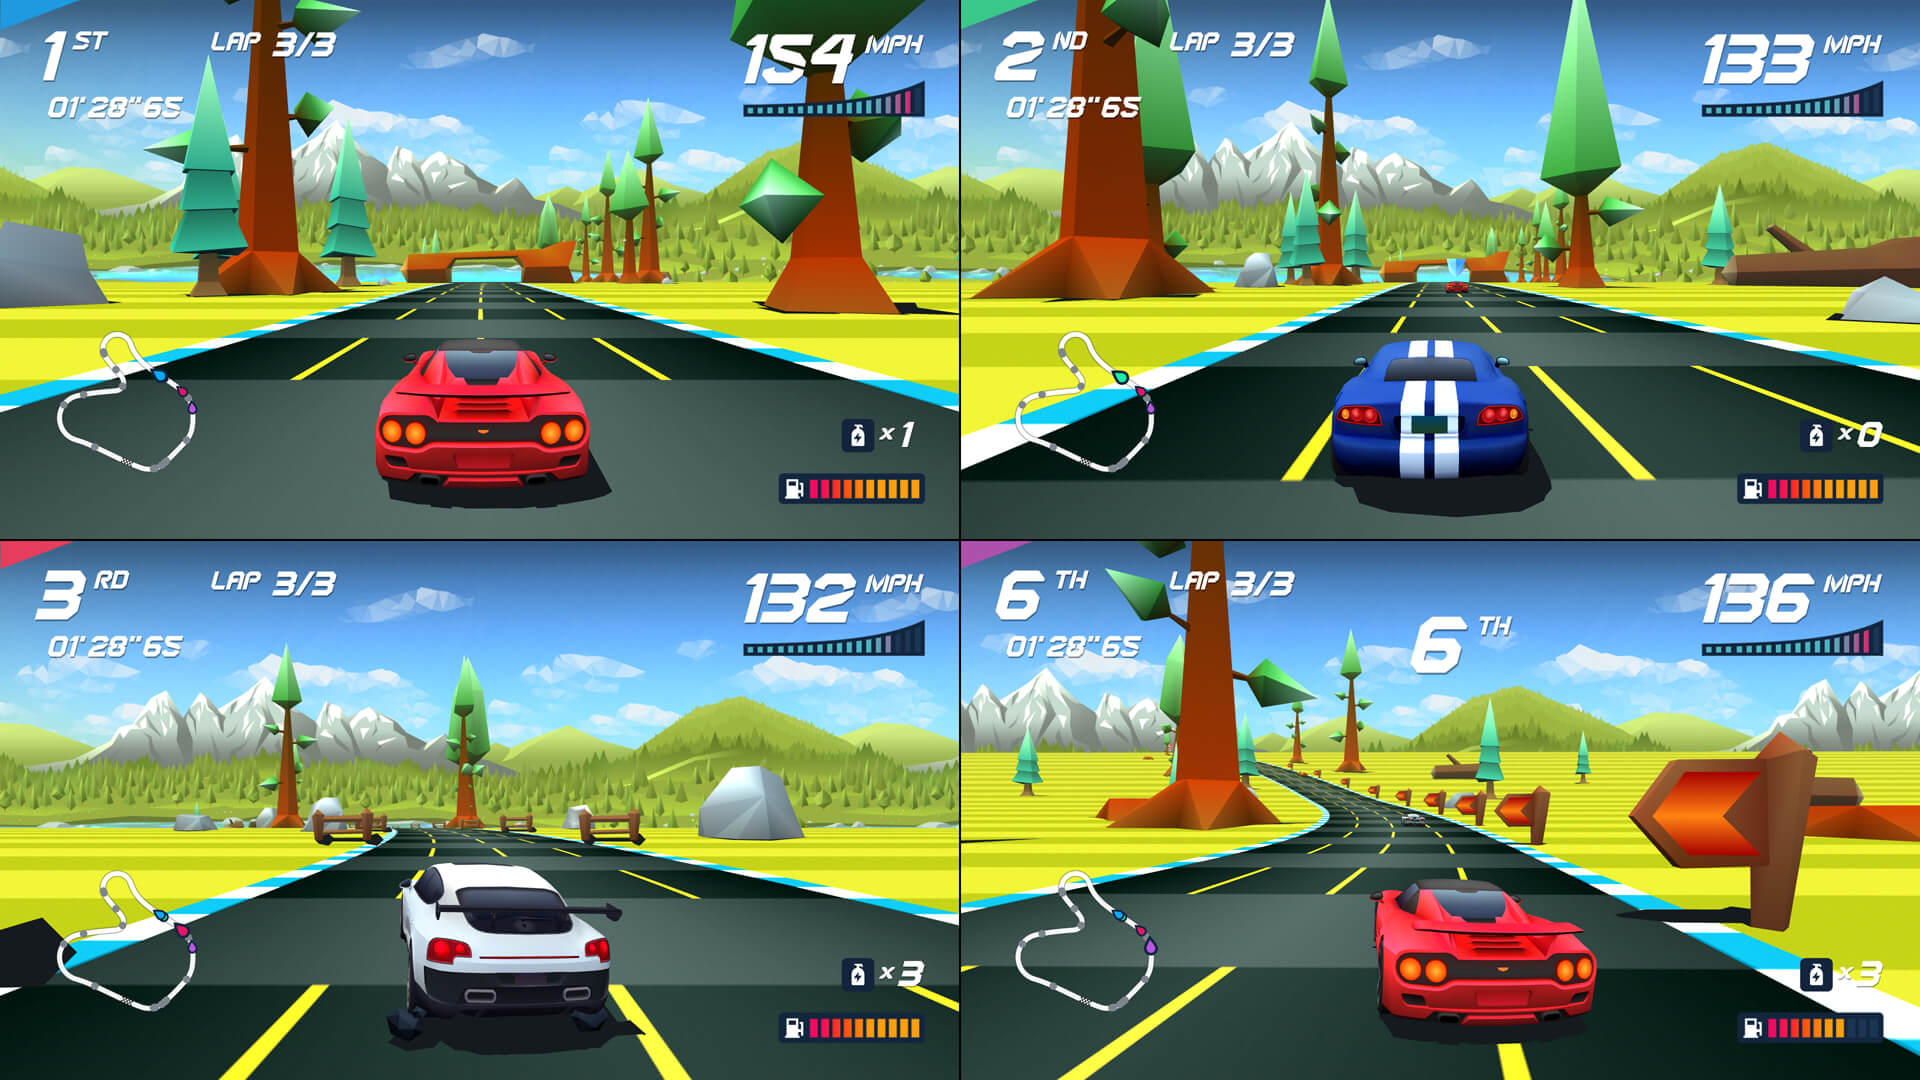 Jogo PS4 Horizon Chase Turbo SONY PLAYSTATION - Jogos de Corrida e Voo -  Magazine Luiza